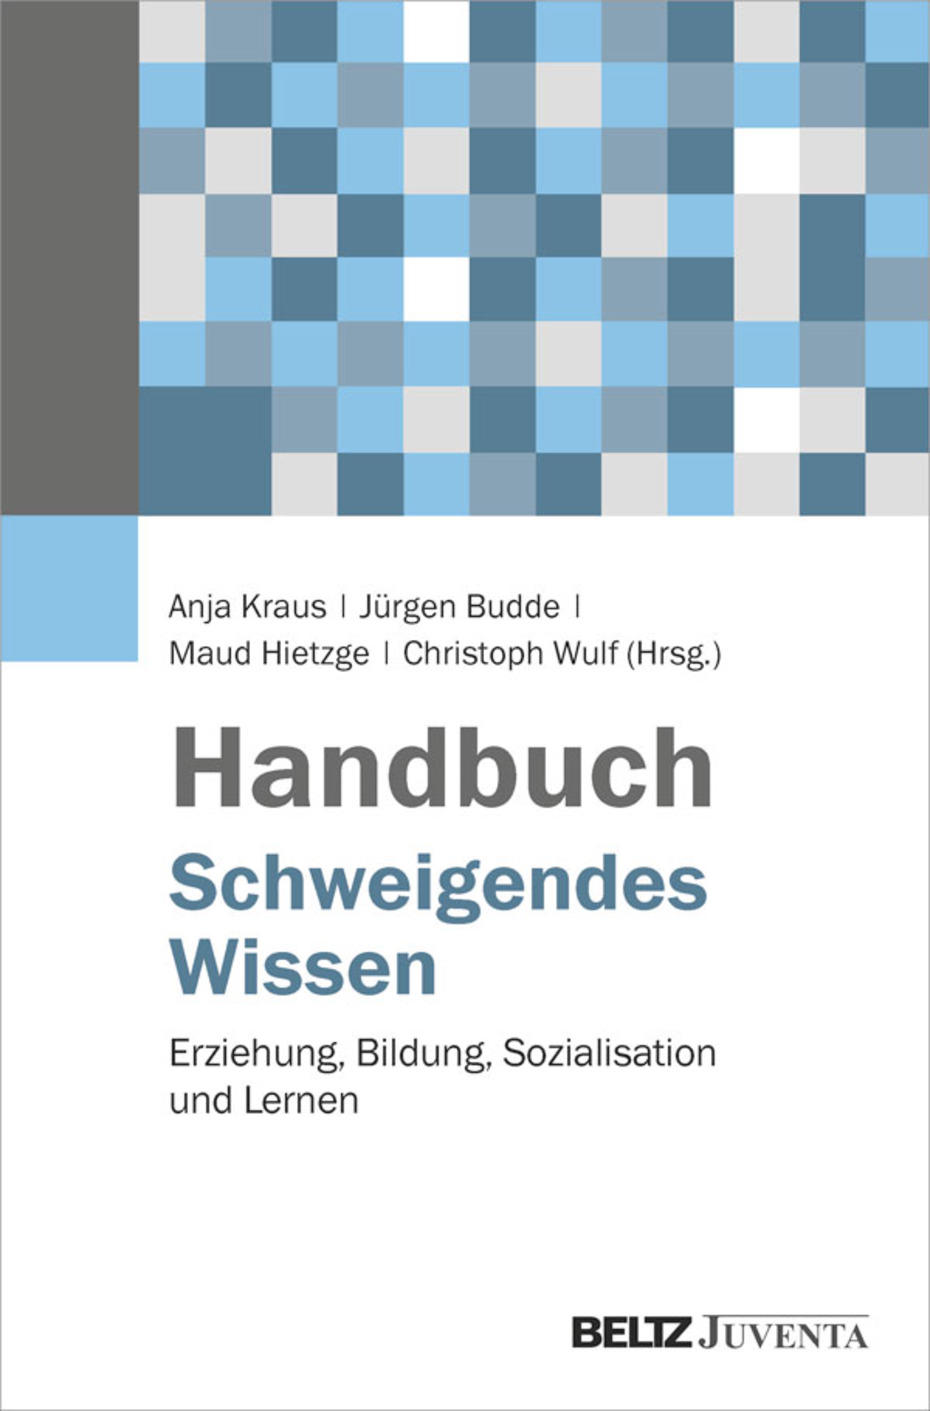 Handbuch Schweigendes Wissen (Cover)